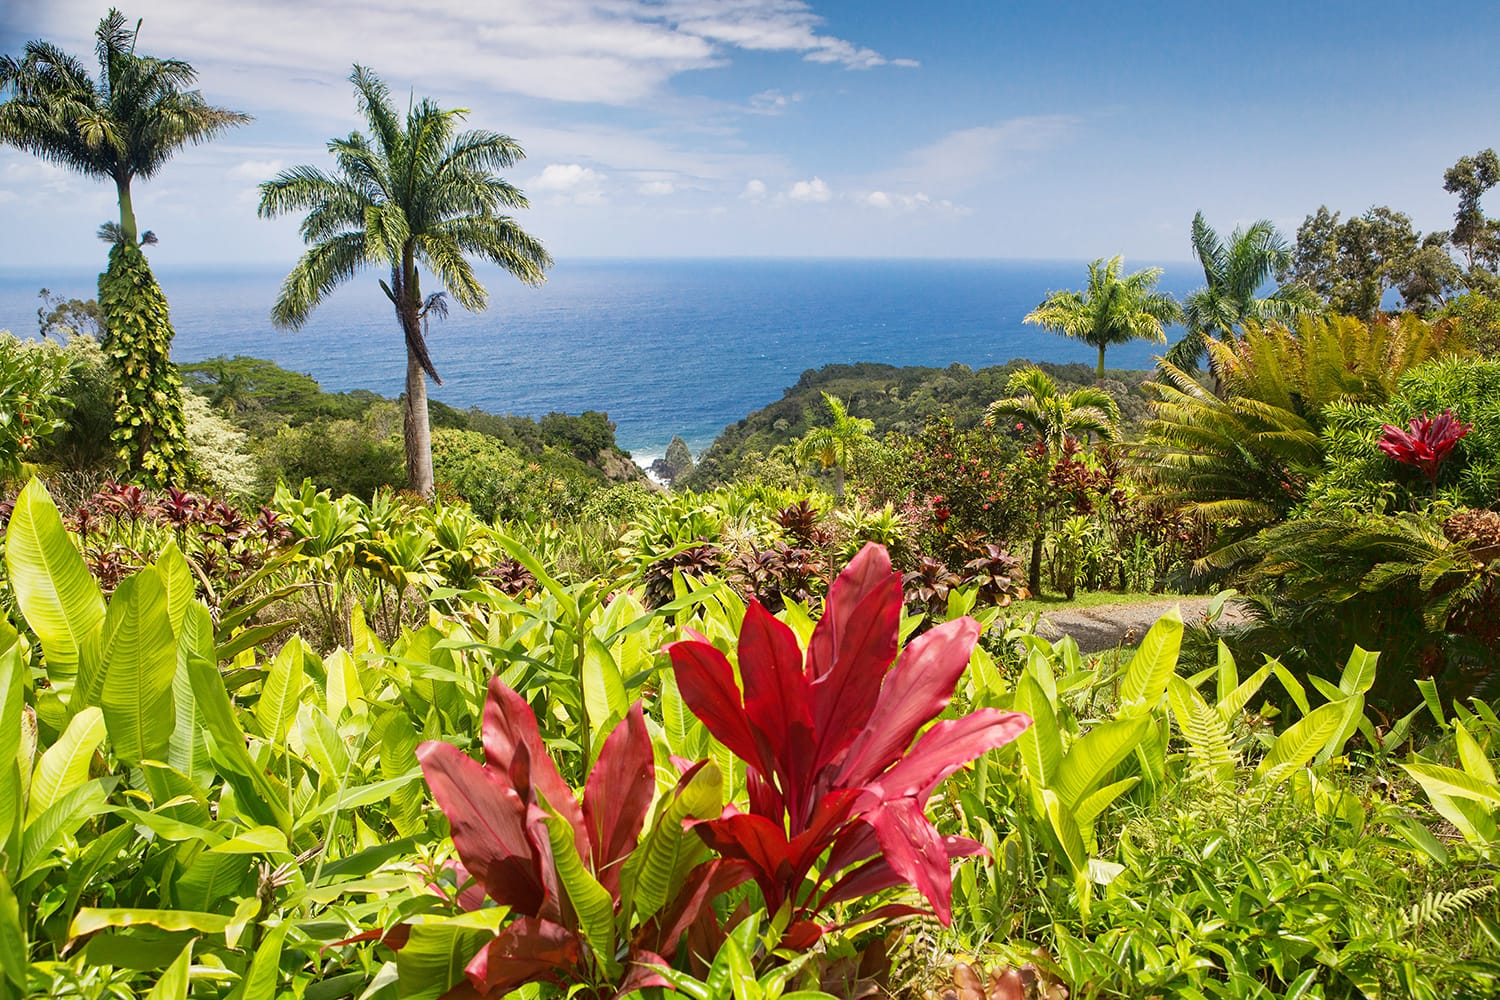 Garden of Eden Arboretum and the Keopuka Rock Overlook in Maui, Hawaii